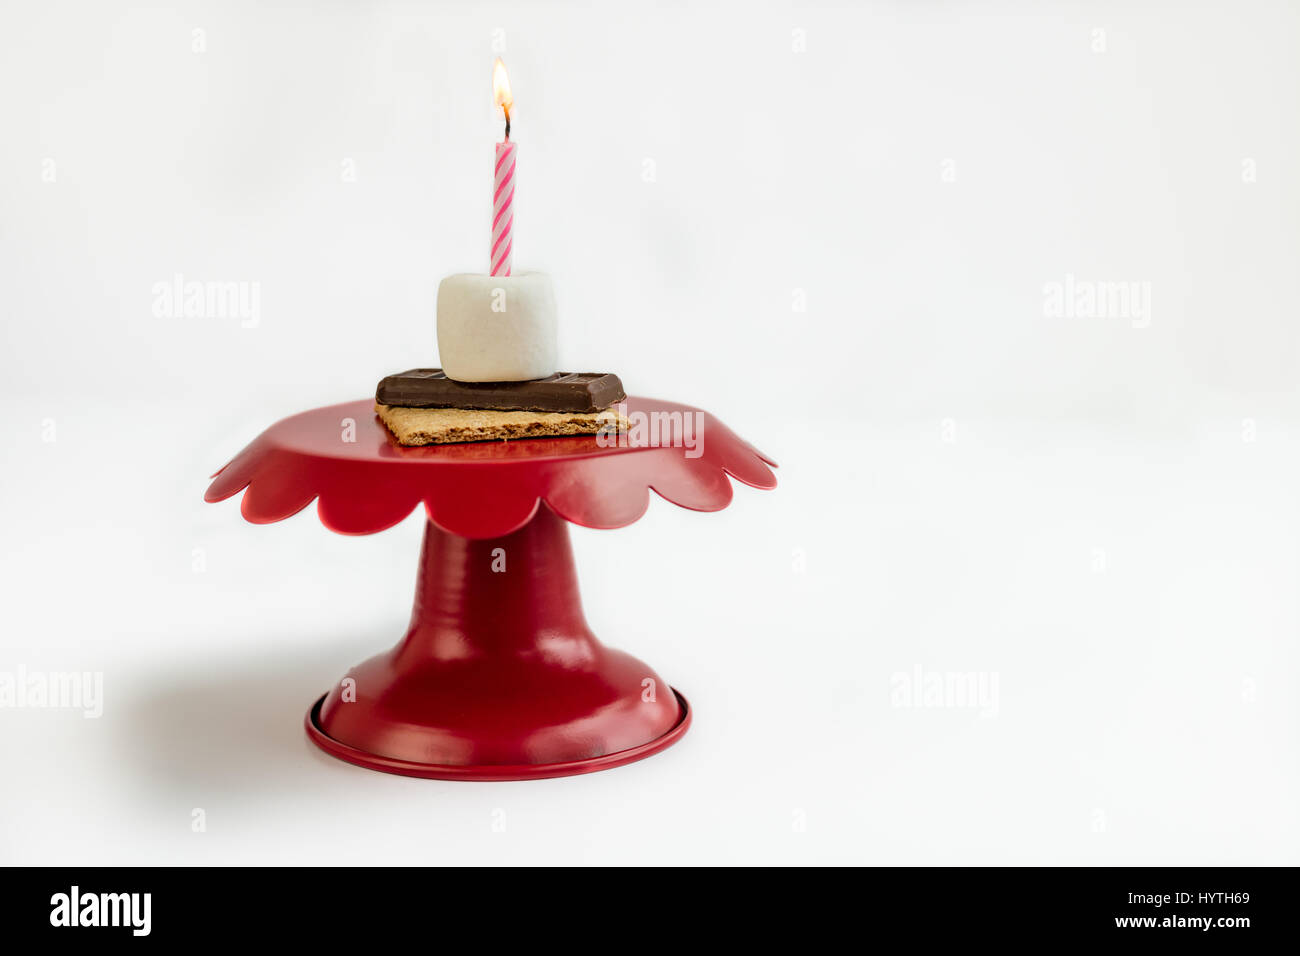 S'more sorpresa di compleanno sulla torta rossa piastra con una rosa e bianco candela accesa per festeggiare il compleanno mangiando marshmallow, cioccolato, e Graham cracker. Foto Stock